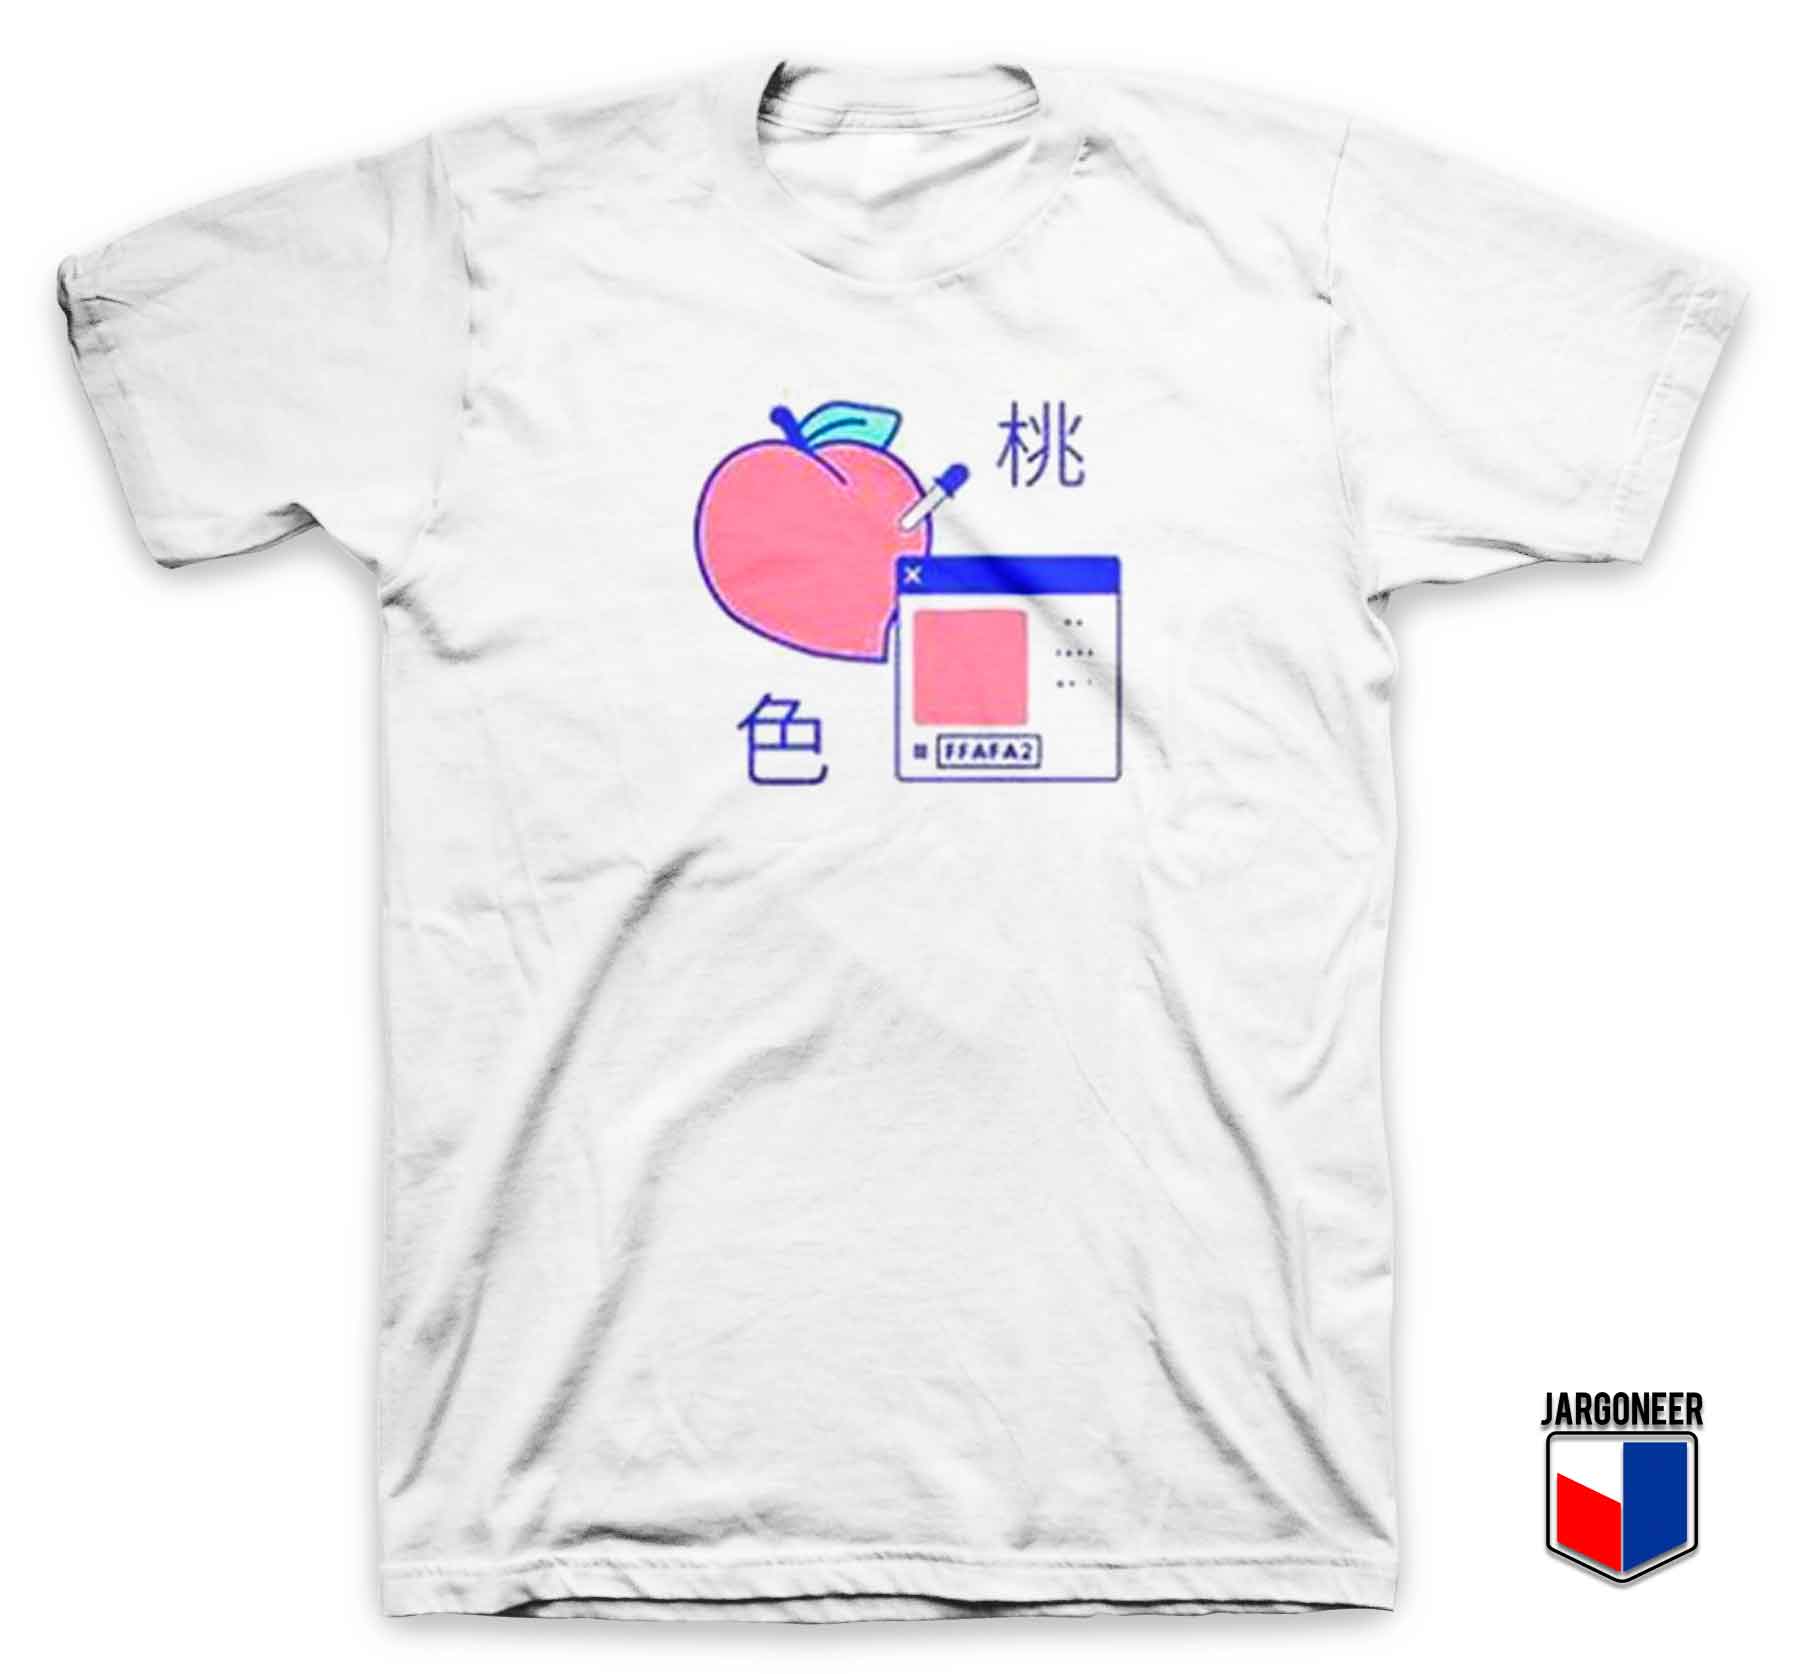 Peach Digital - Shop Unique Graphic Cool Shirt Designs